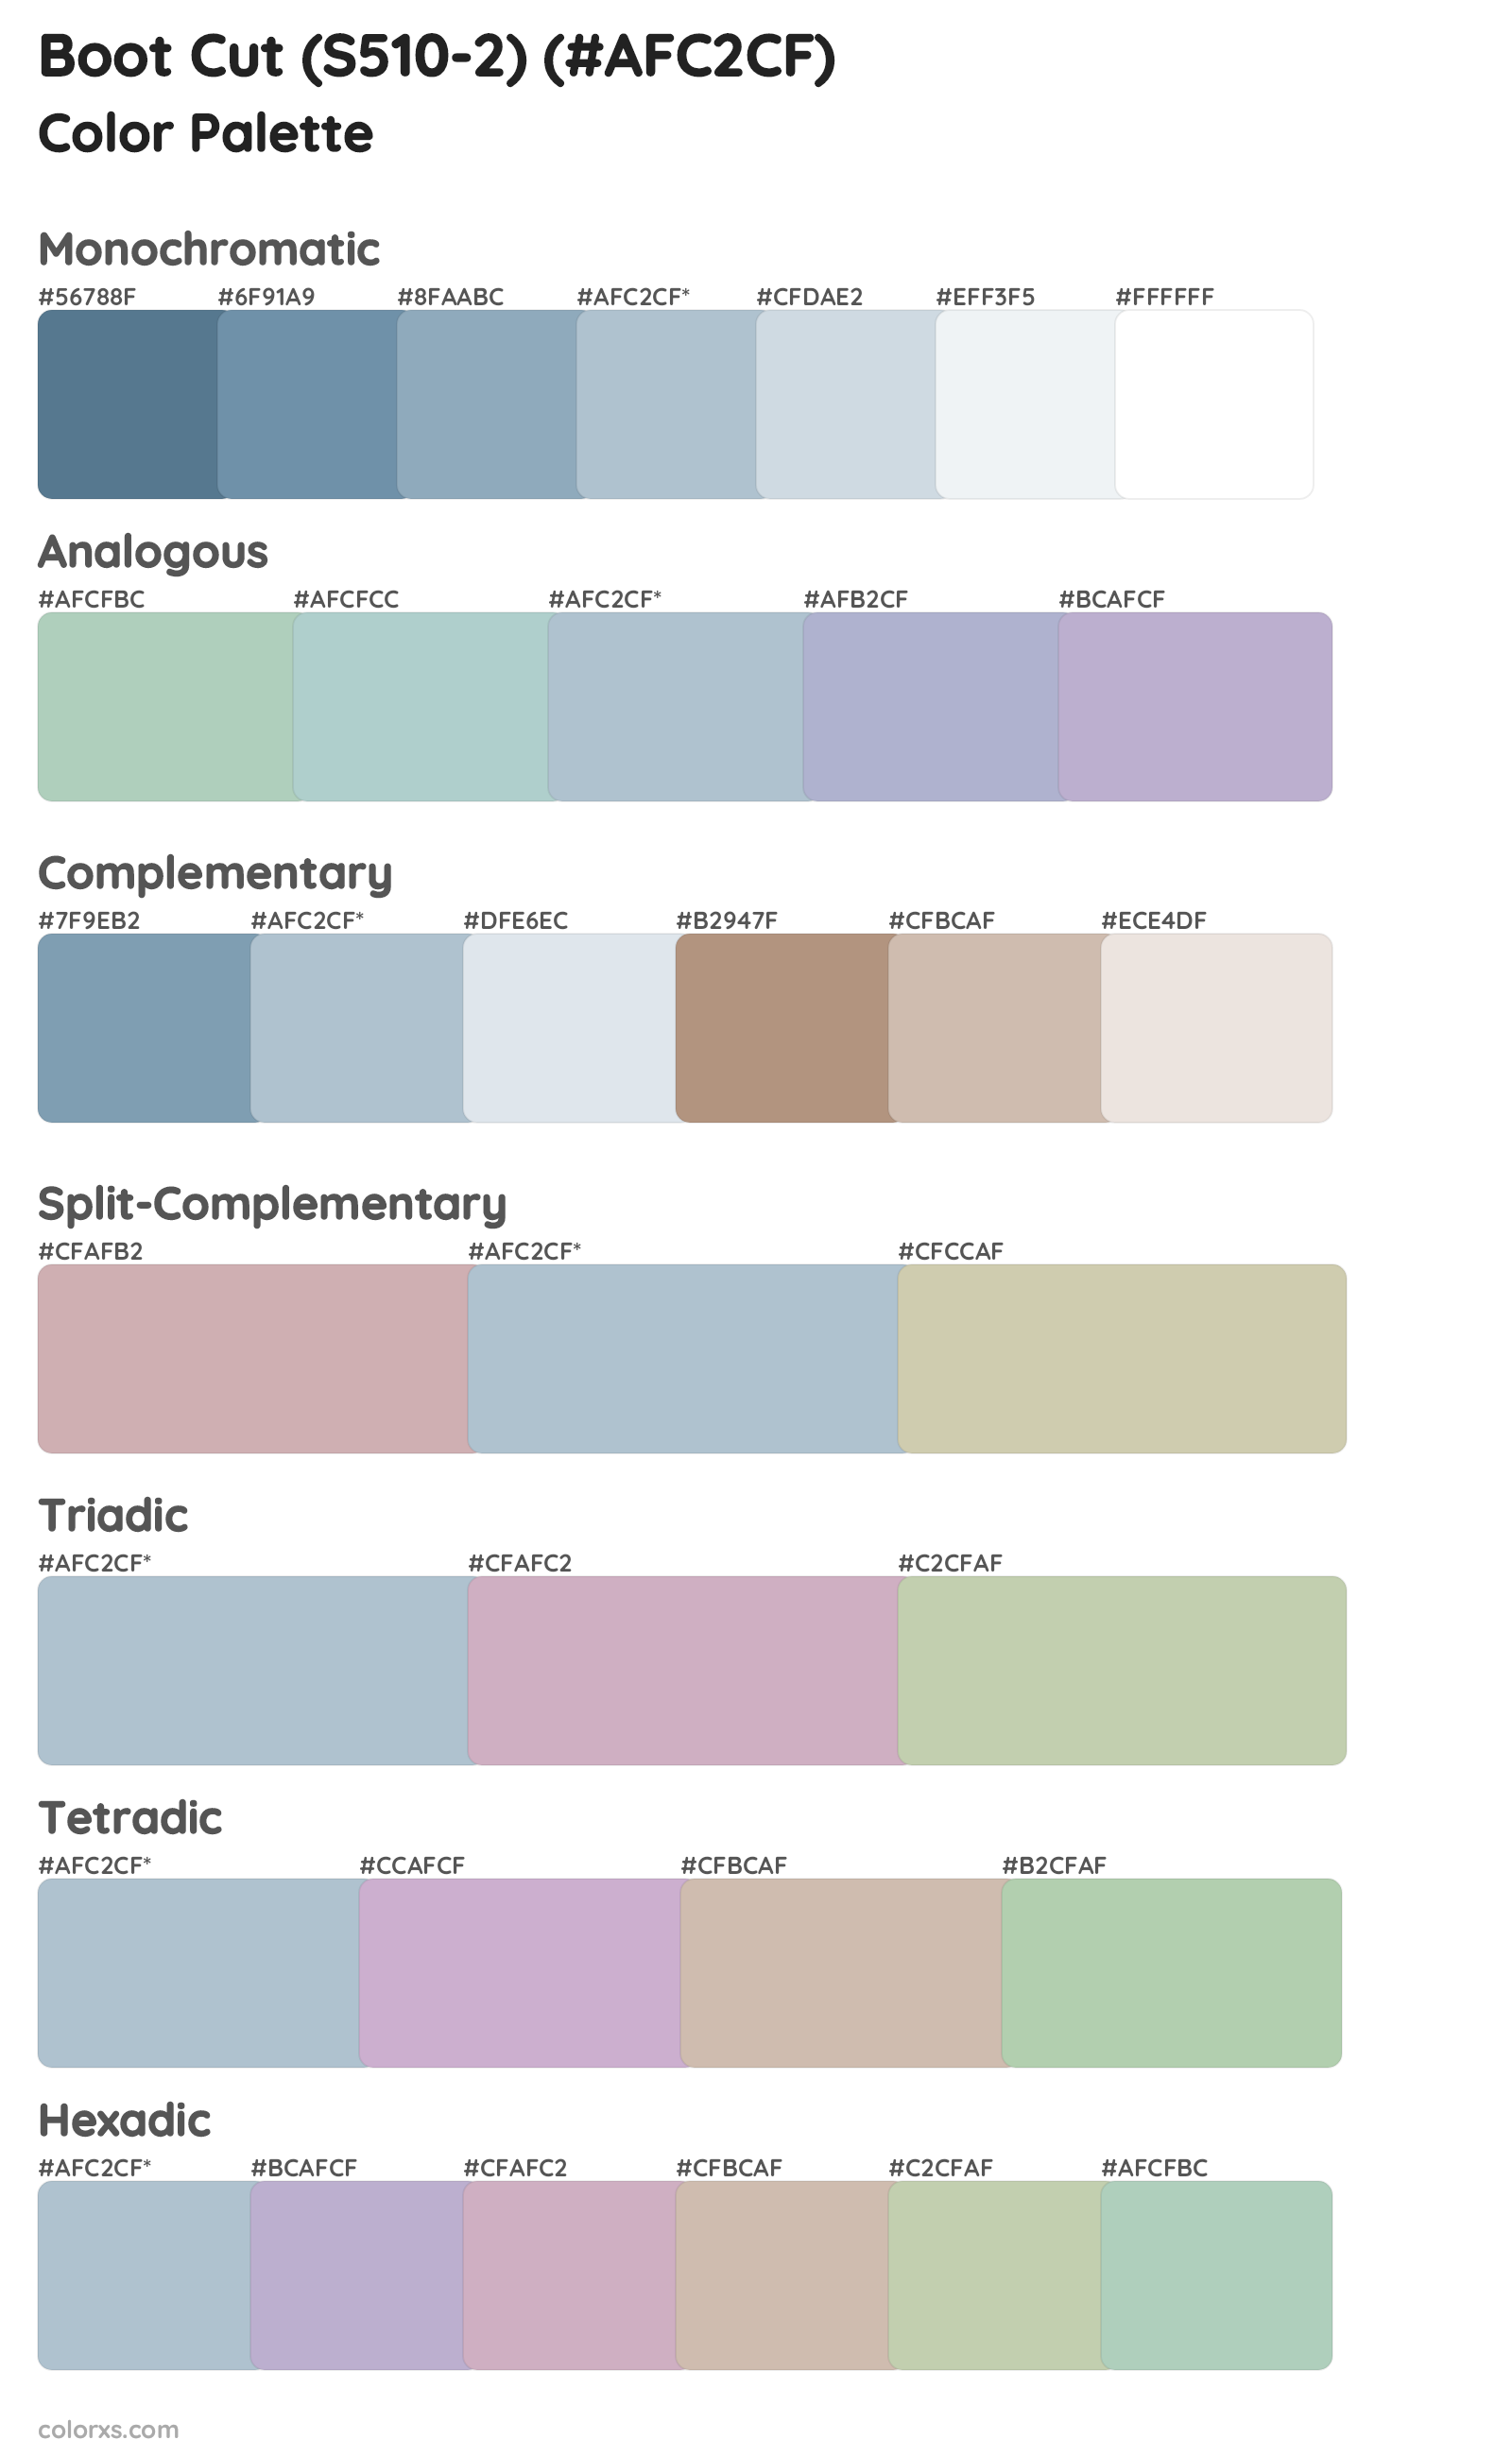 Boot Cut (S510-2) Color Scheme Palettes